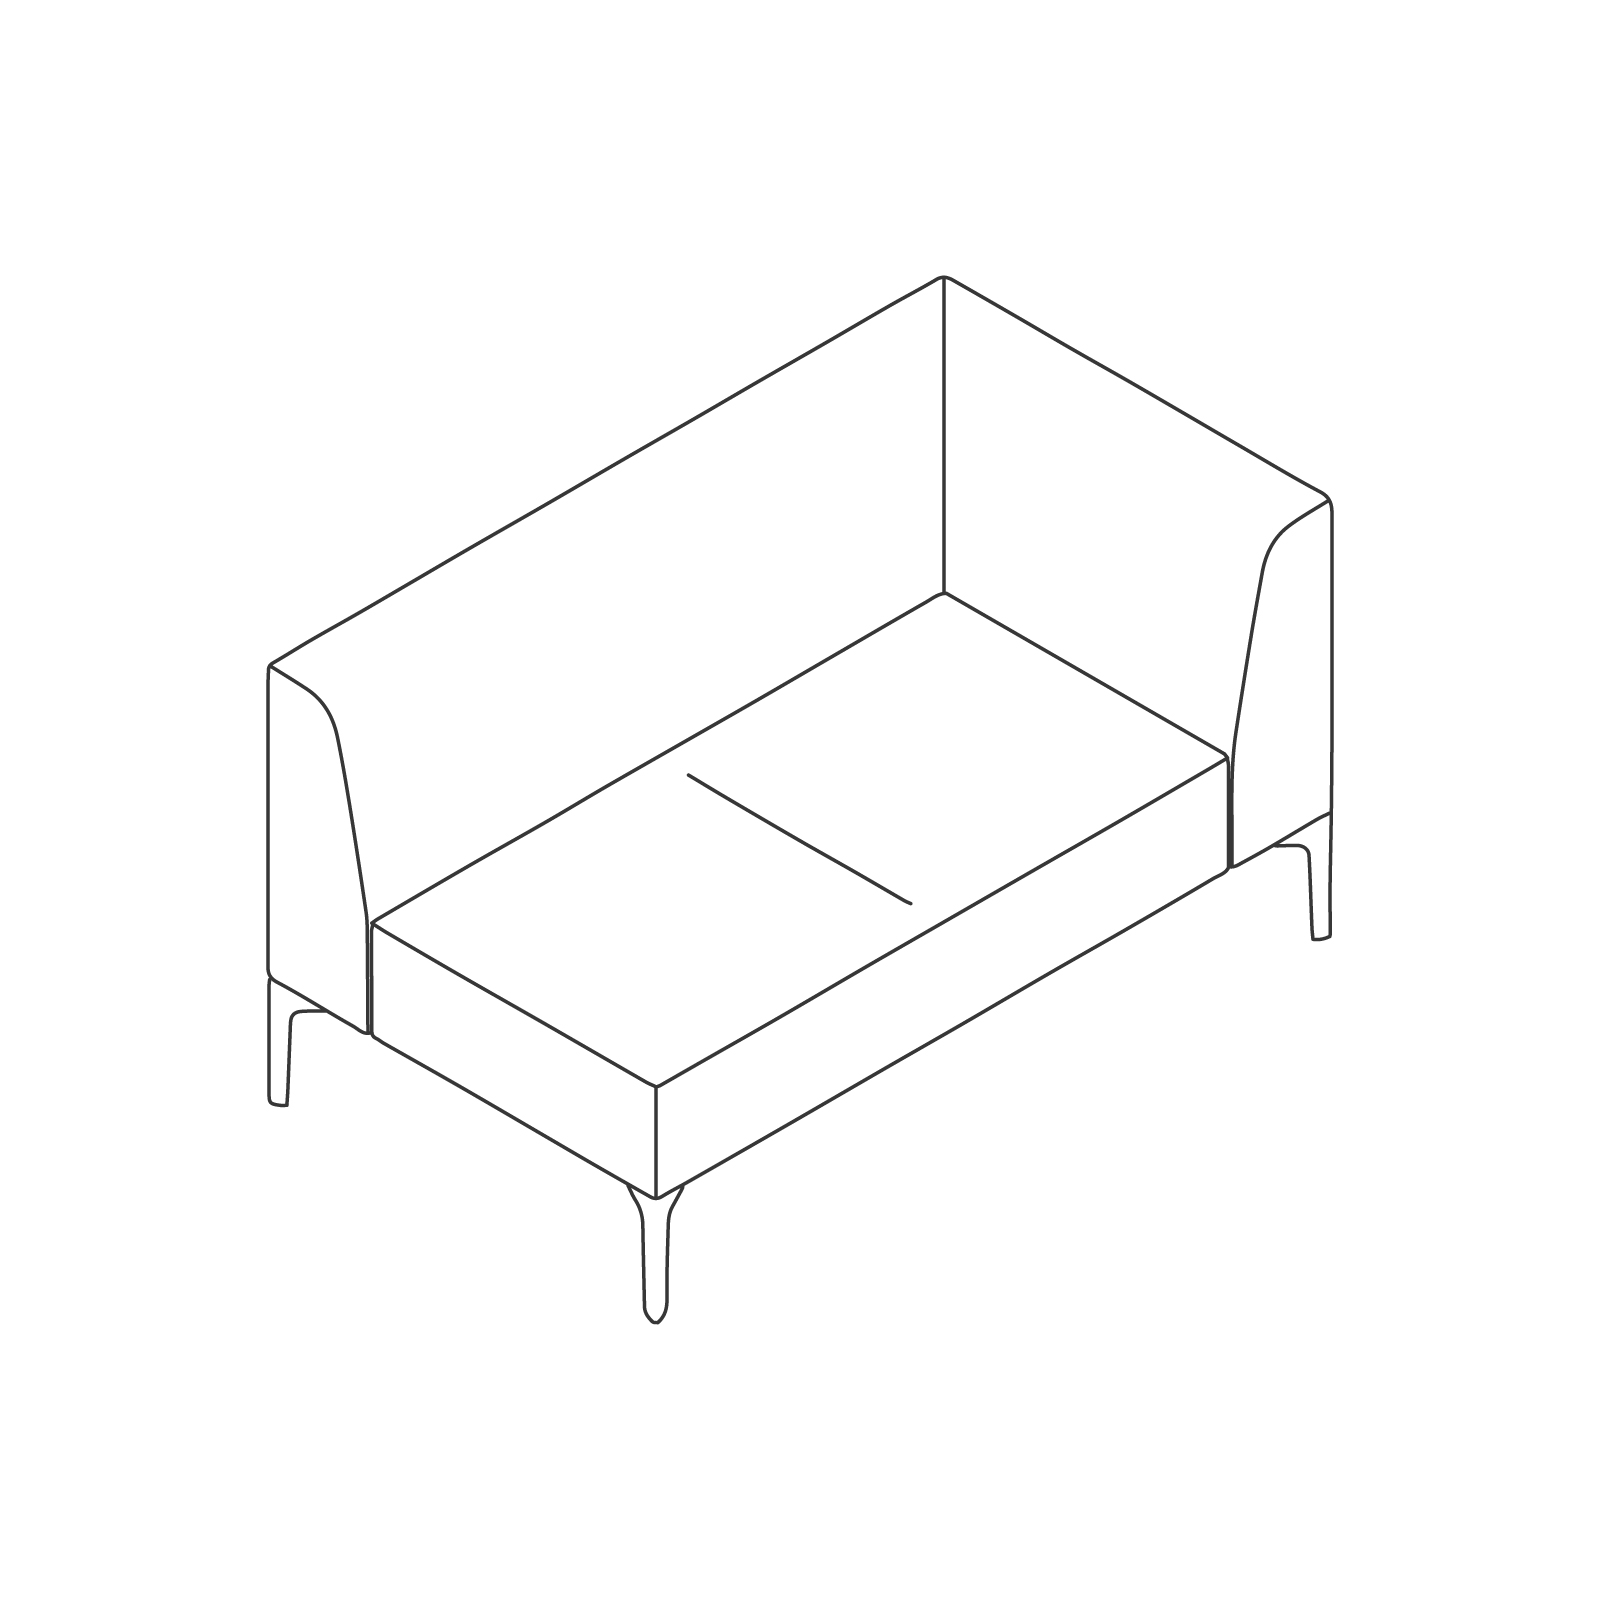 线描图 - Symbol模块化座椅 - 左侧扶手 - 双座